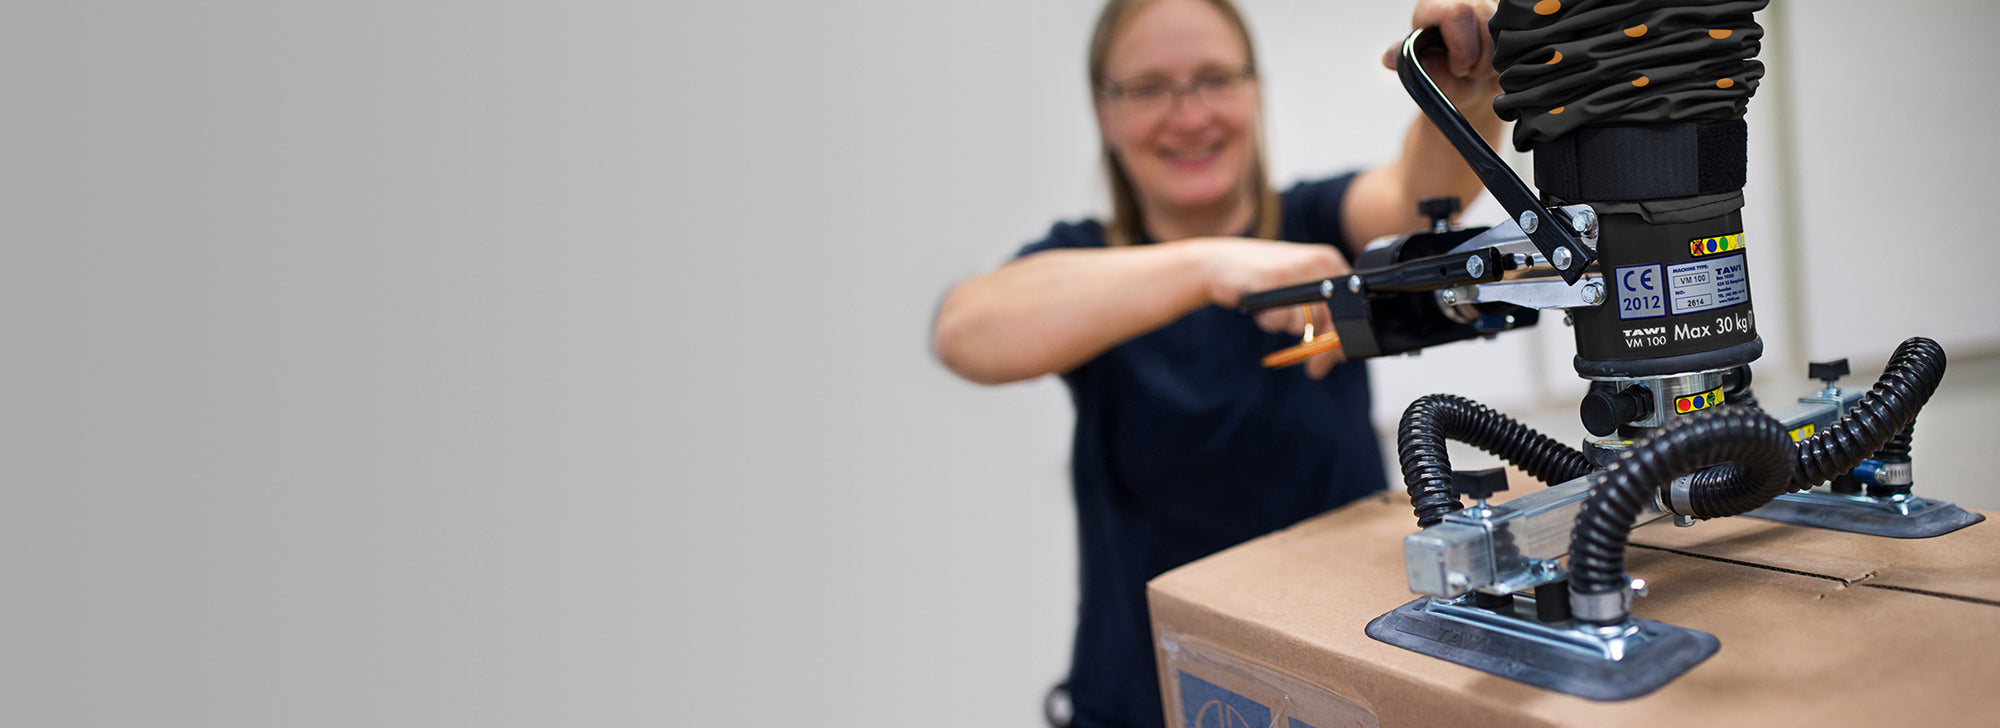 Mujer feliz levantando caja sin esfuerzo con manipulador multifuncional de tawi